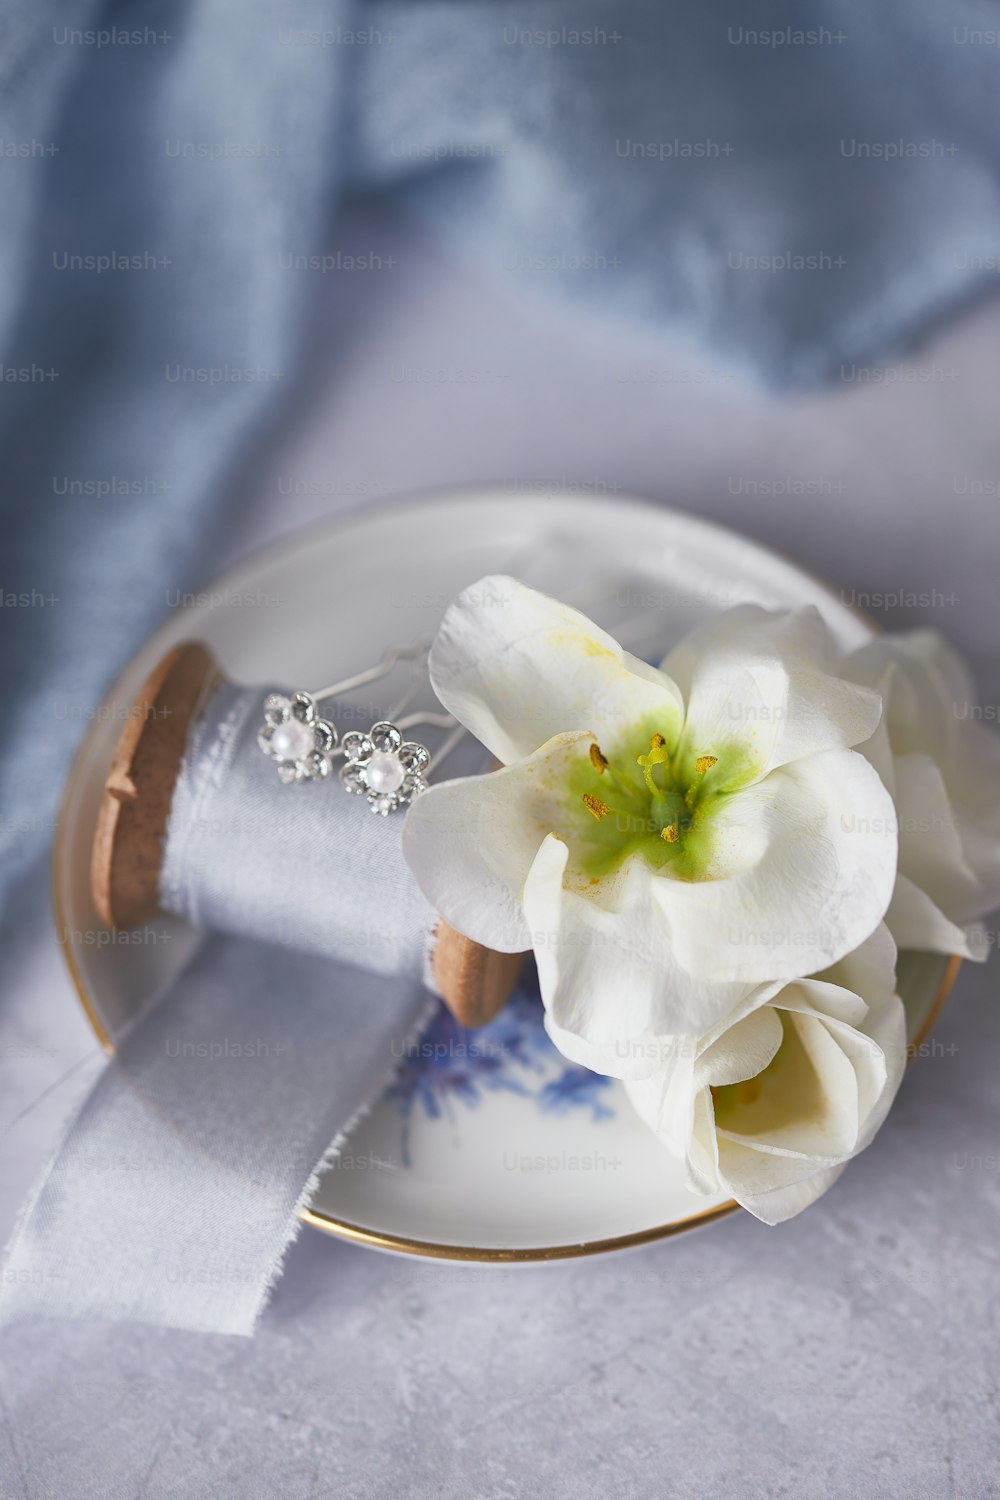 une fleur blanche posée sur une assiette blanche